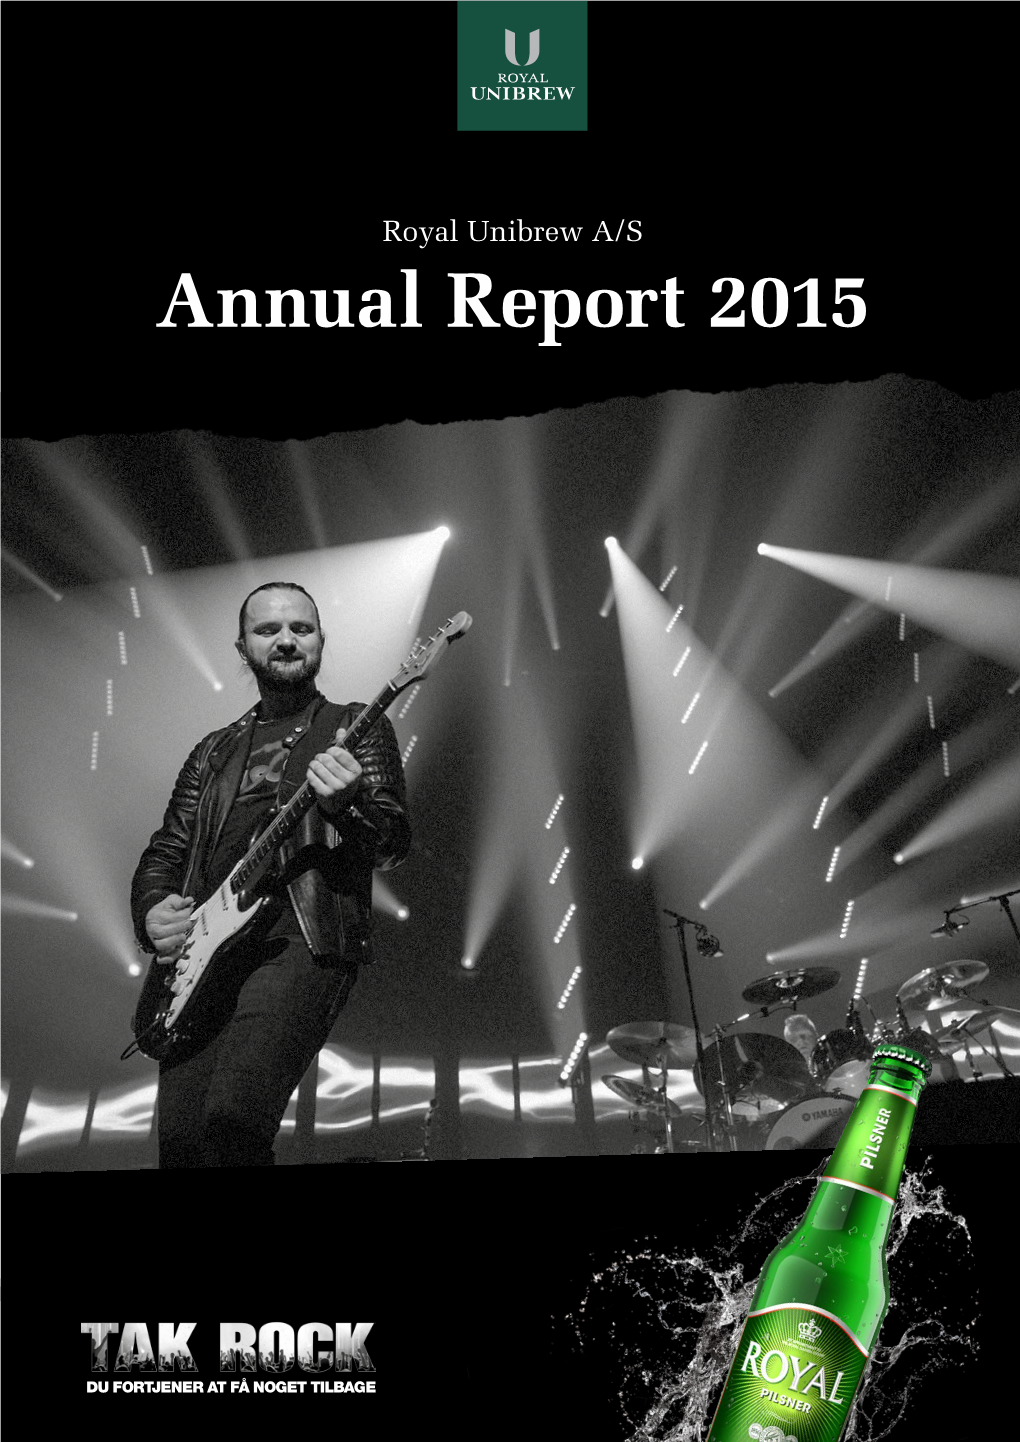 Annual Report 2015 Royal Unibrew in Brief